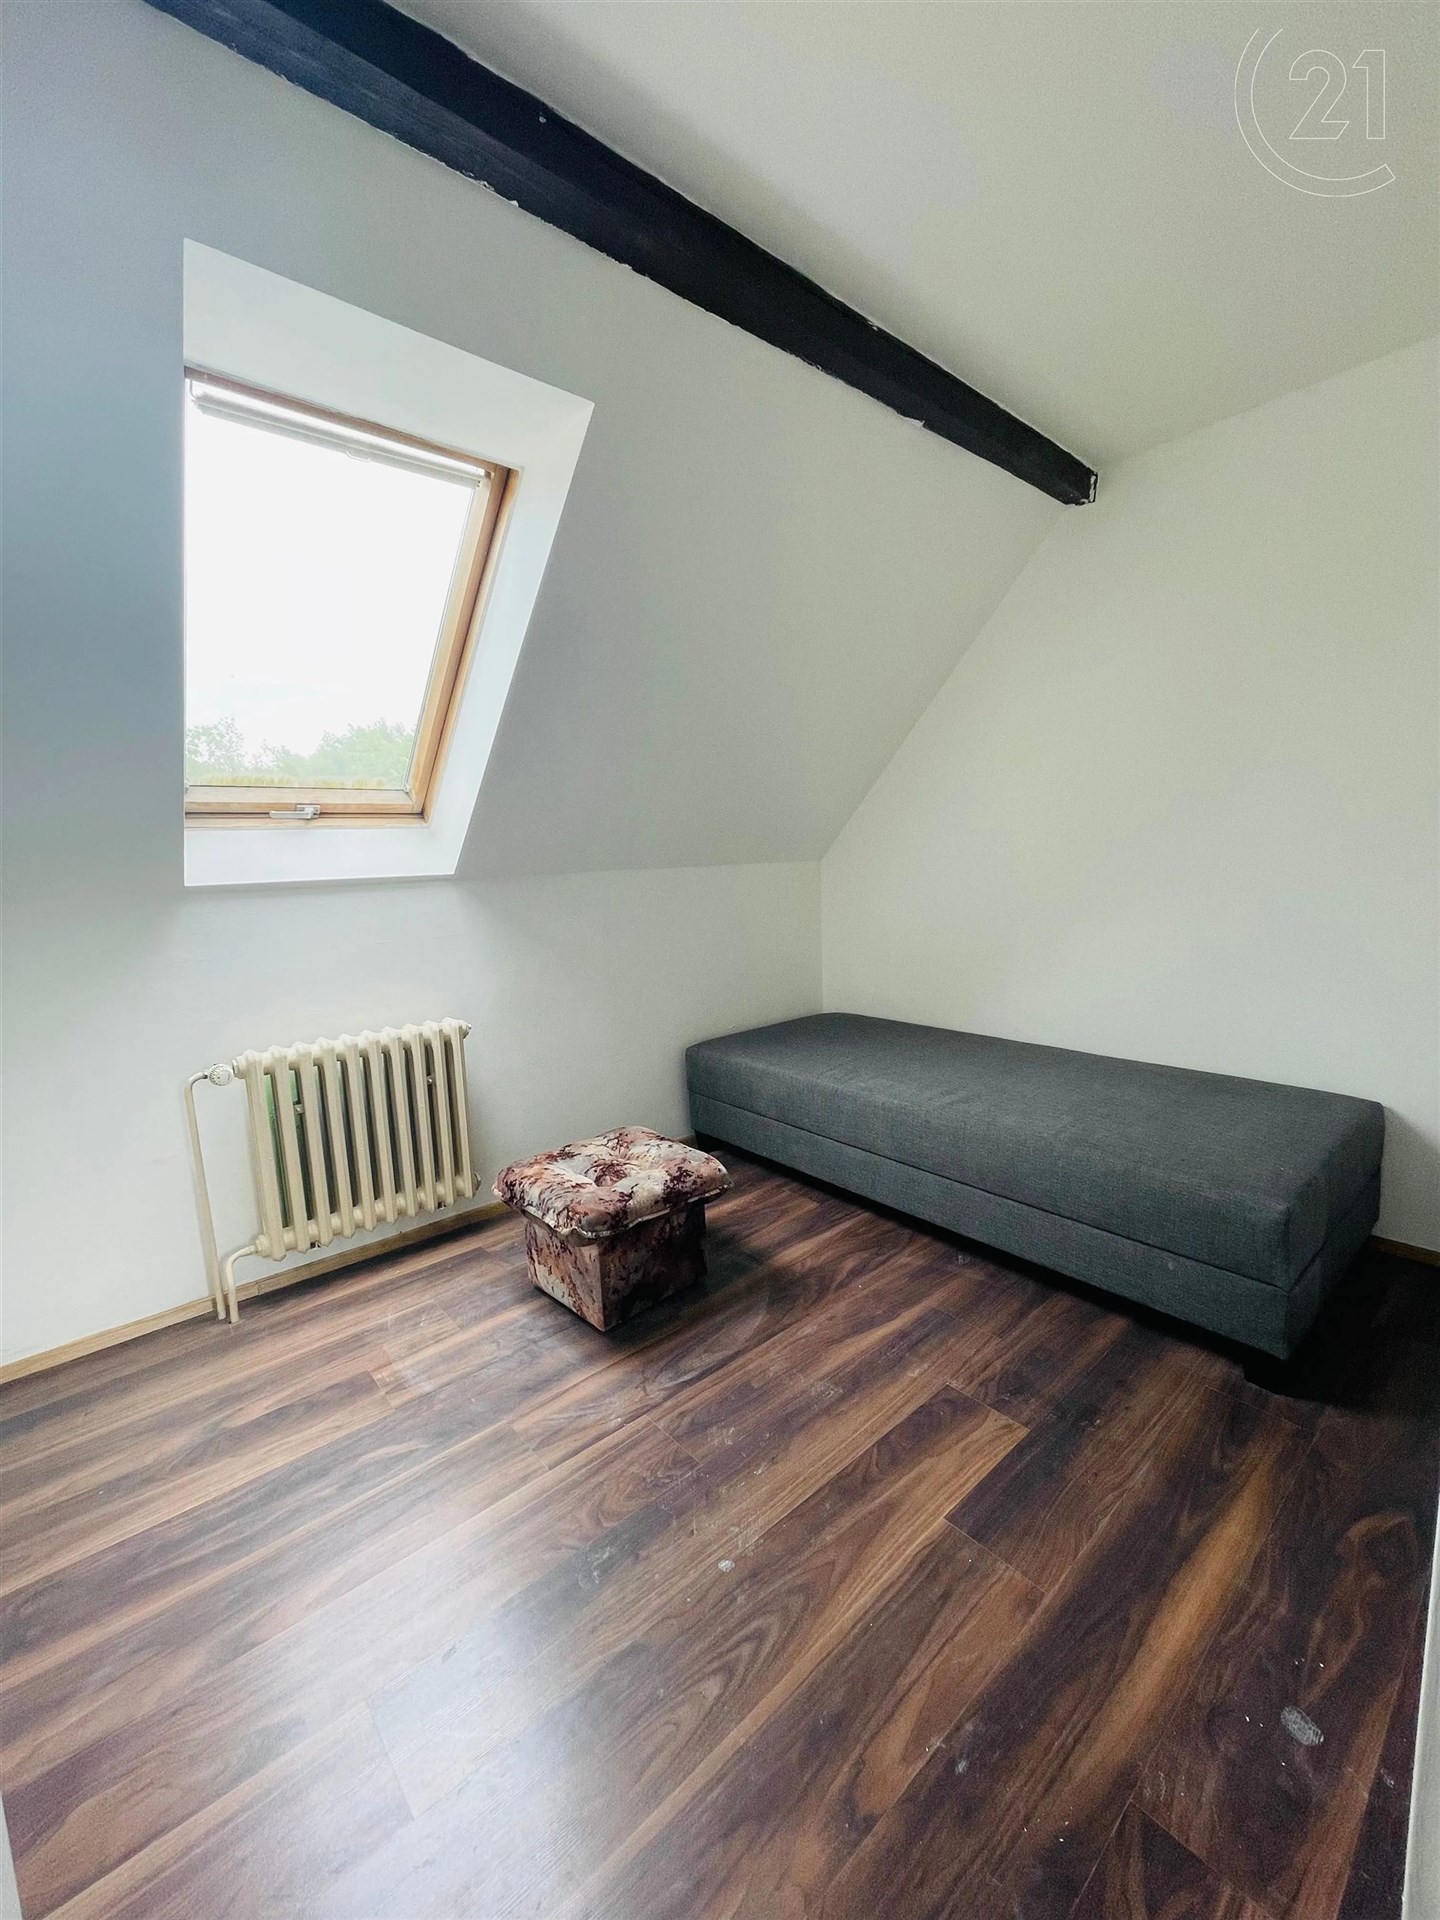 pokoj / ložnice s radiátor, přirozené světlo, dřevěná podlaha, klenutý strop, a trámový strop